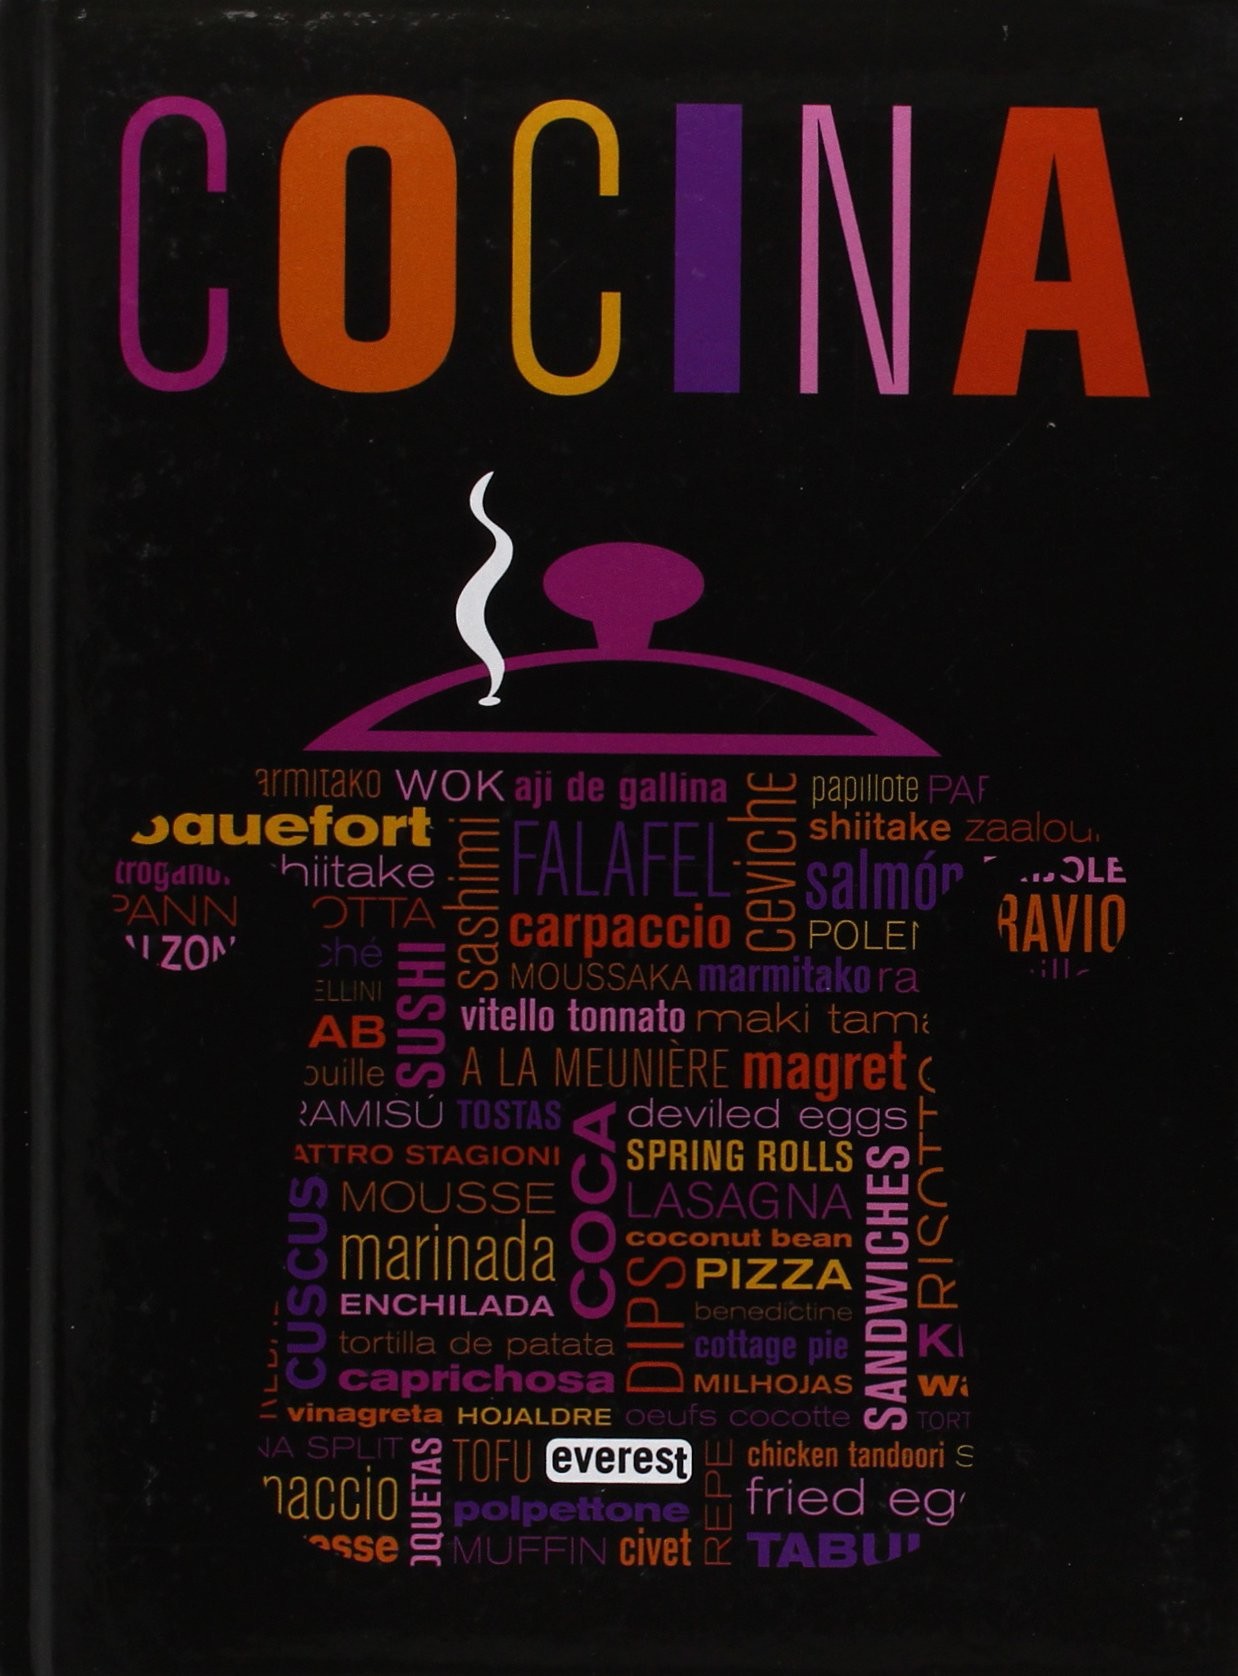 Cocina, un libro con más de 500 recetas internacionales